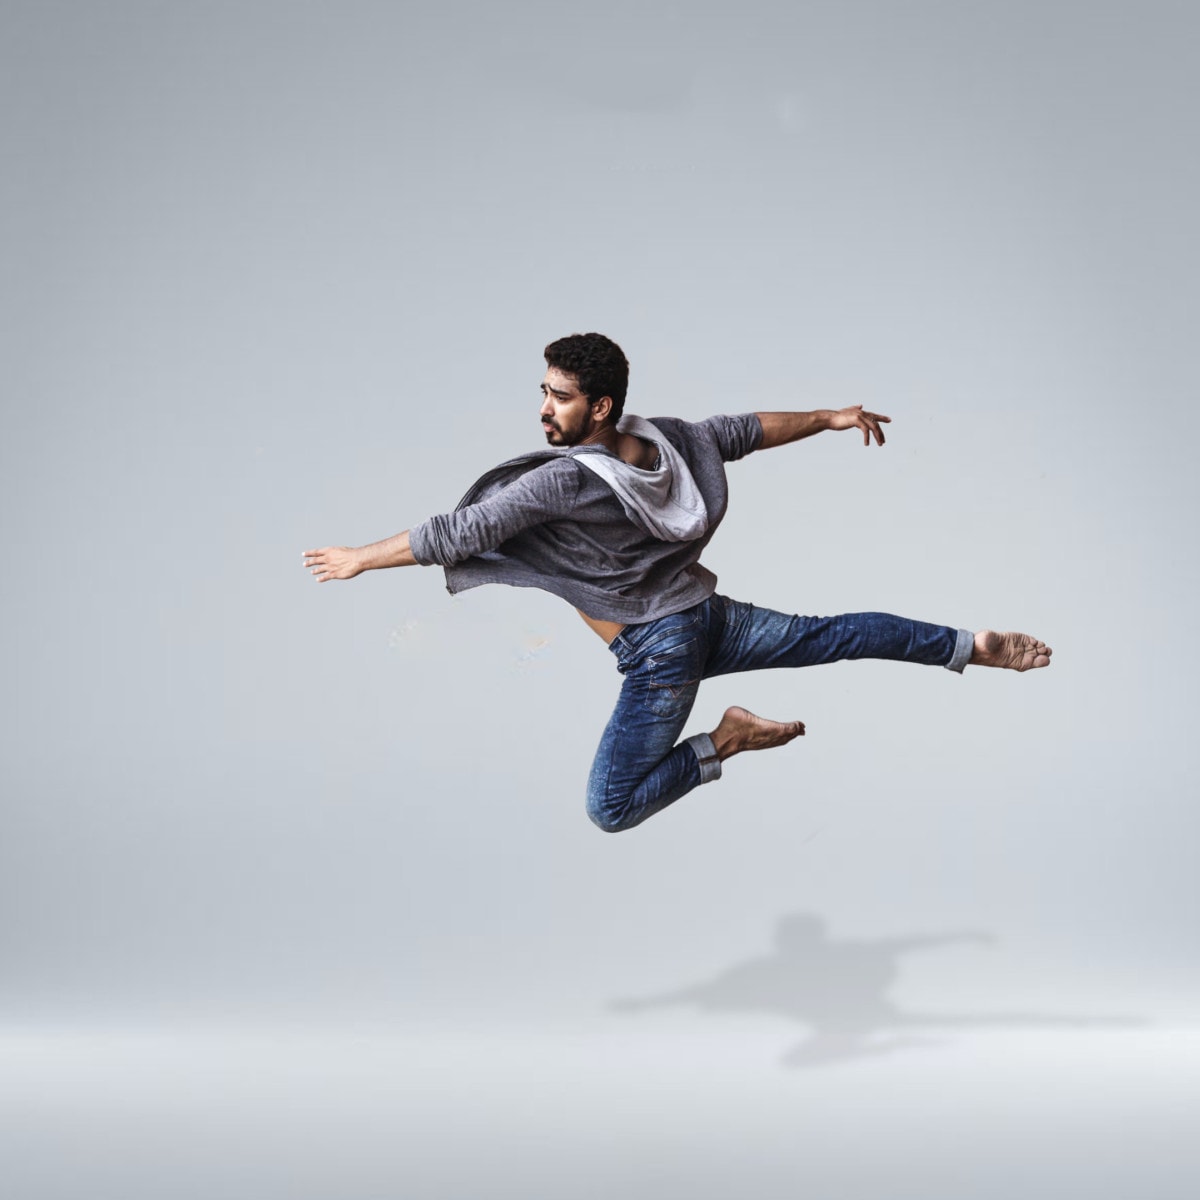 Dancer jumping through the air